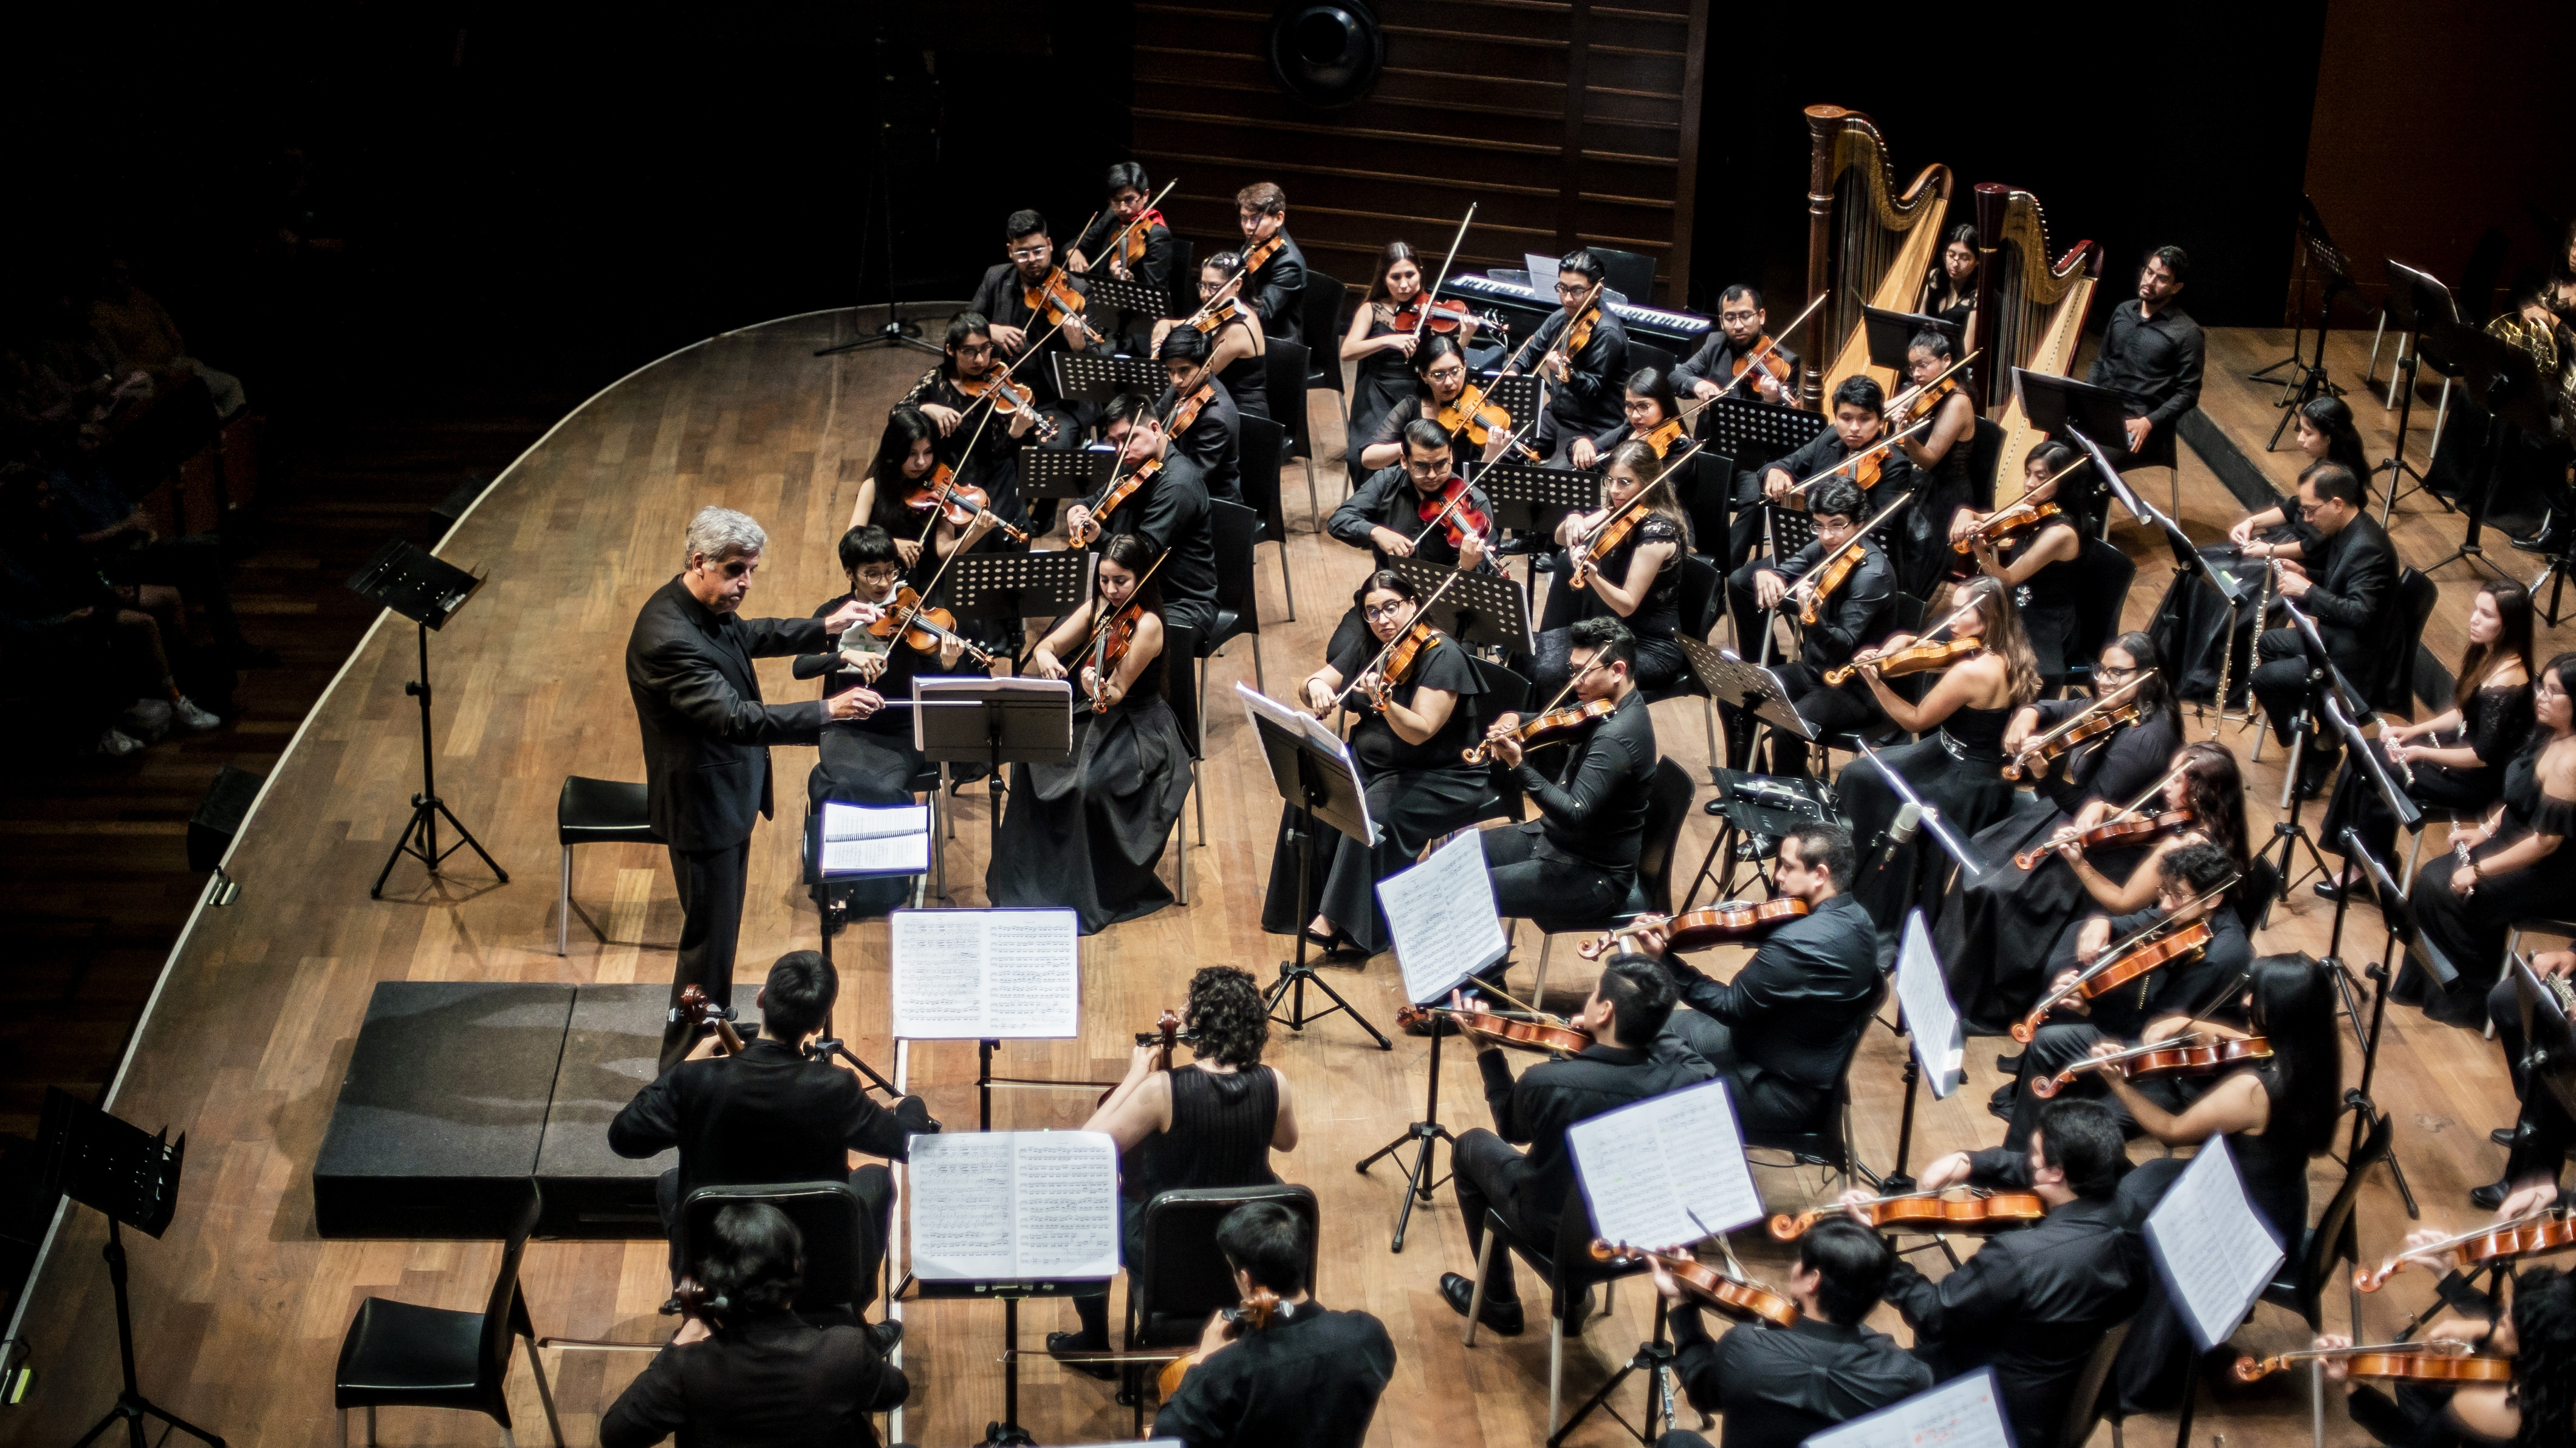 Orquesta Sinfónica Nacional Juvenil Bicentenario presenta su concierto “Brahms & Schumann” en el Gran Teatro Nacional